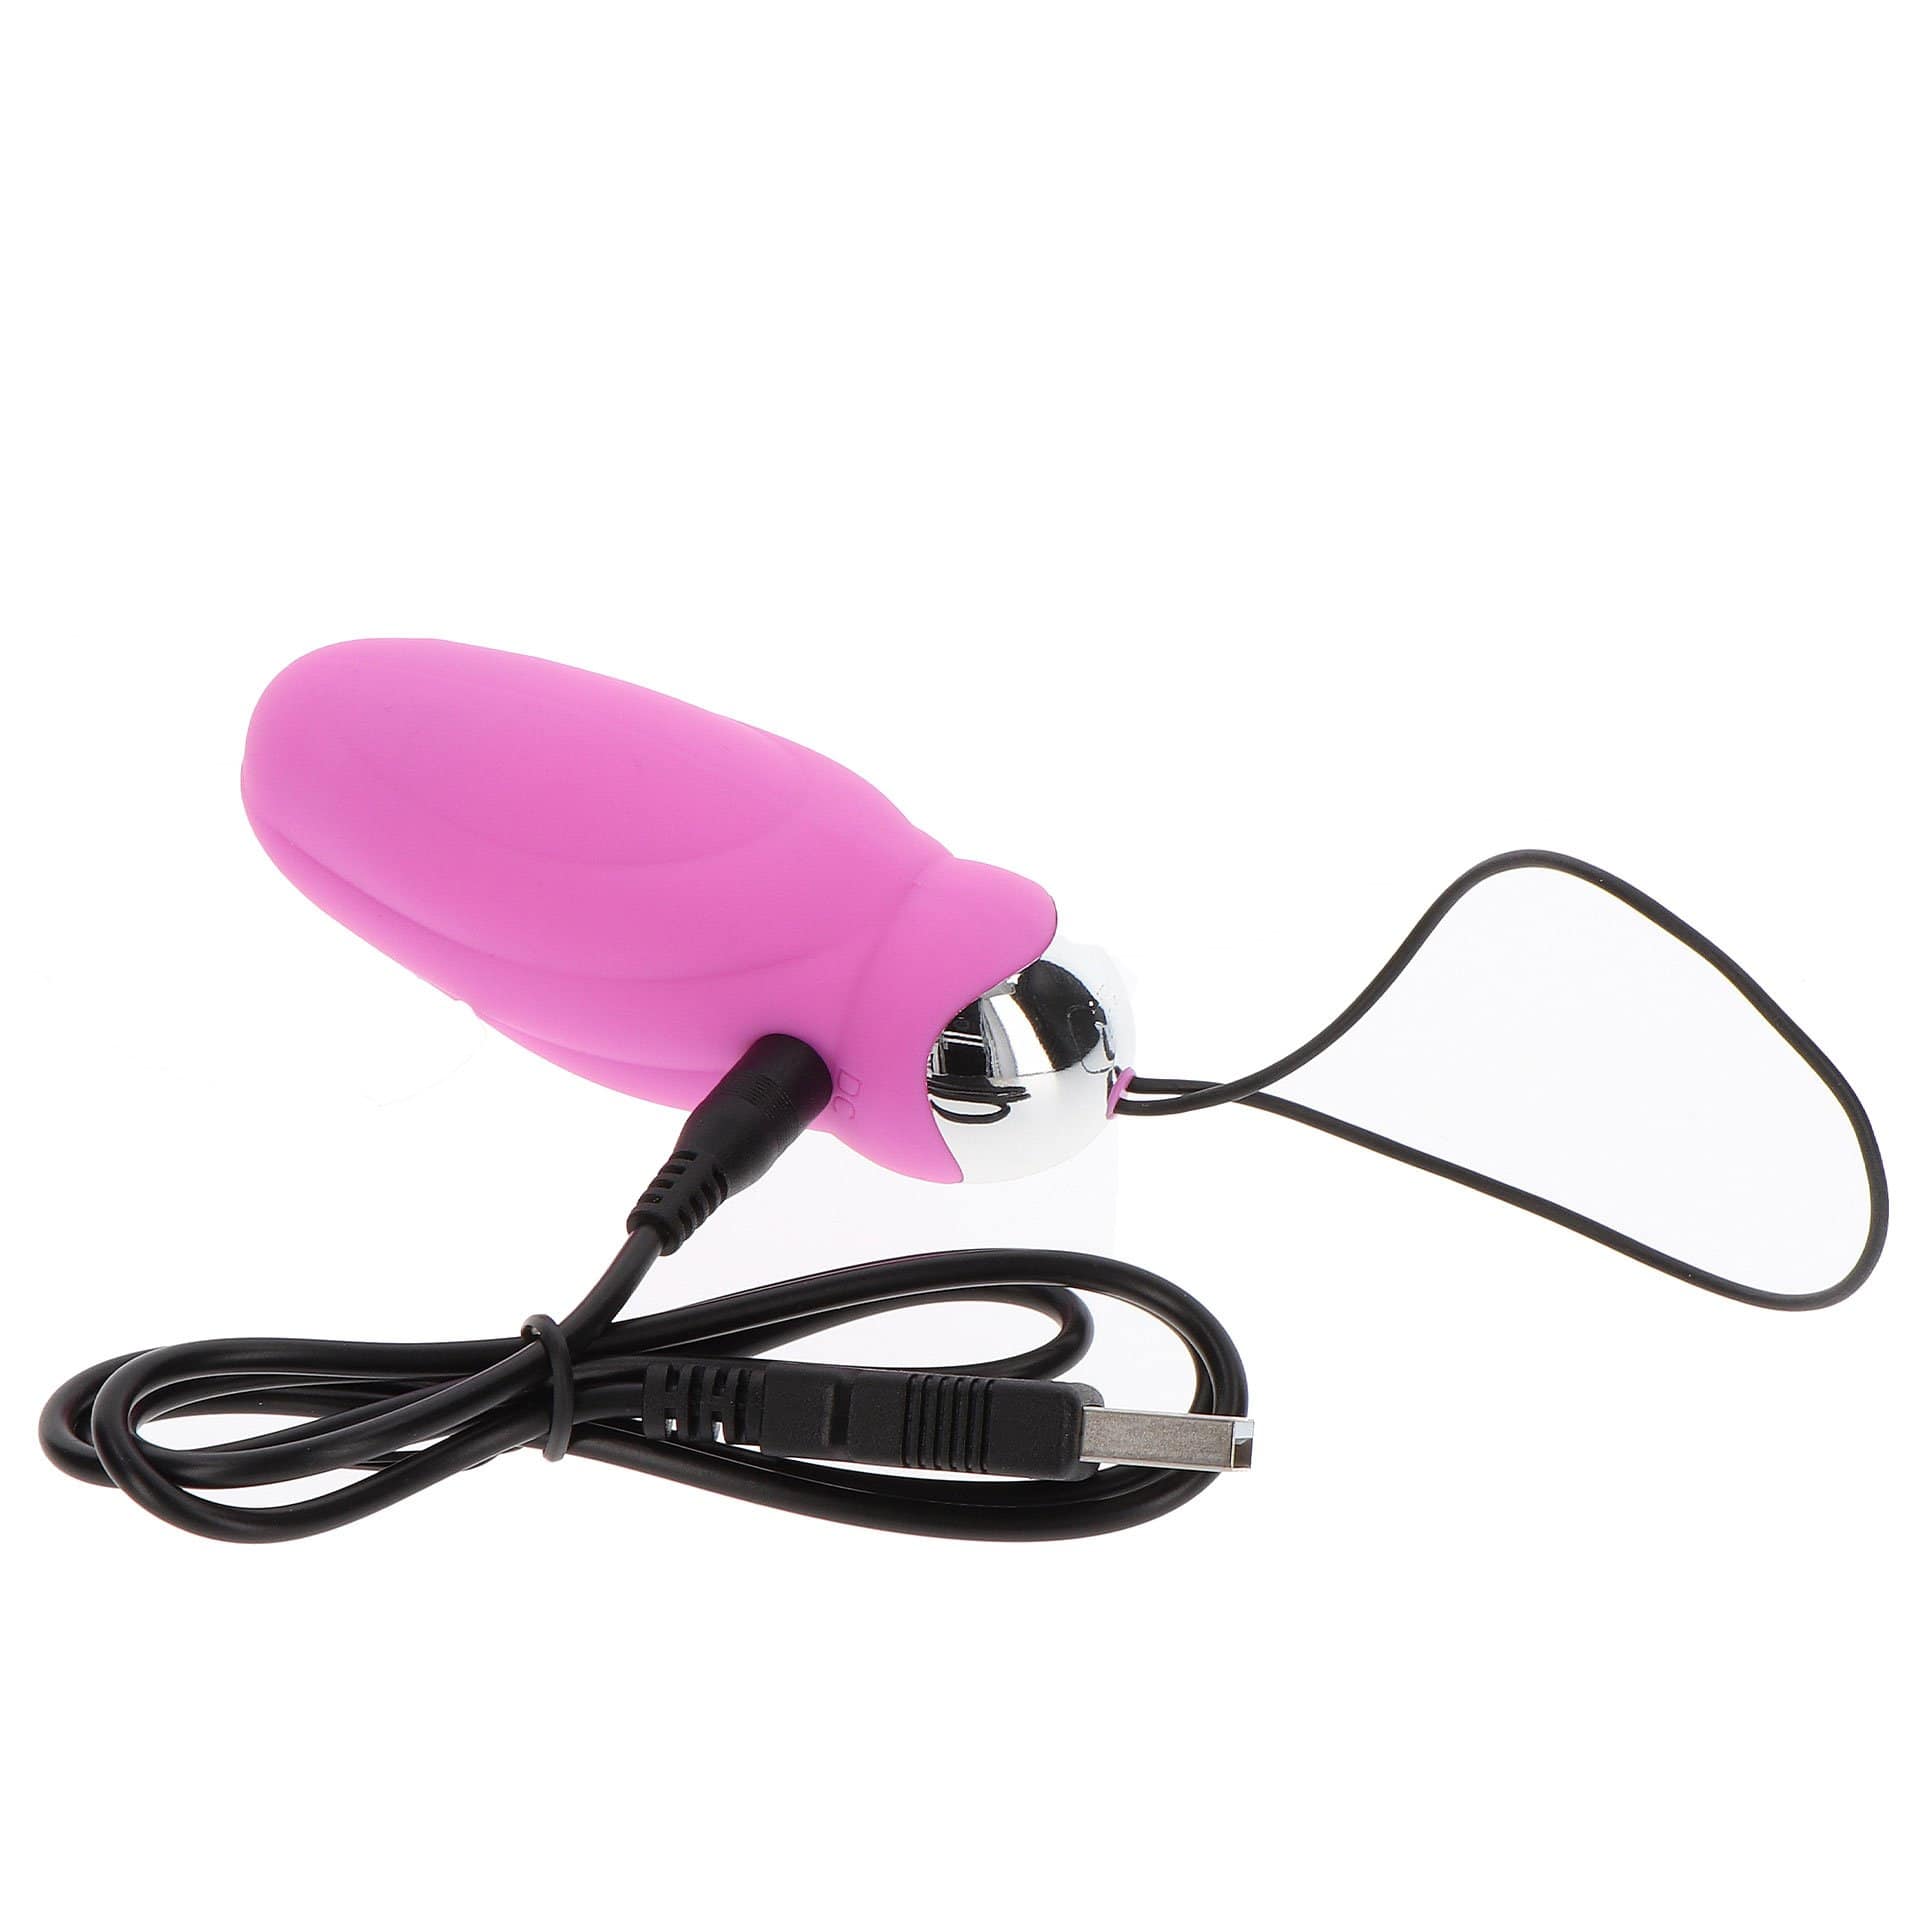 ToyJoy - You Crack Me Up Remote Control Egg Vibrator (Pink) -  Wireless Remote Control Egg (Vibration) Rechargeable  Durio.sg